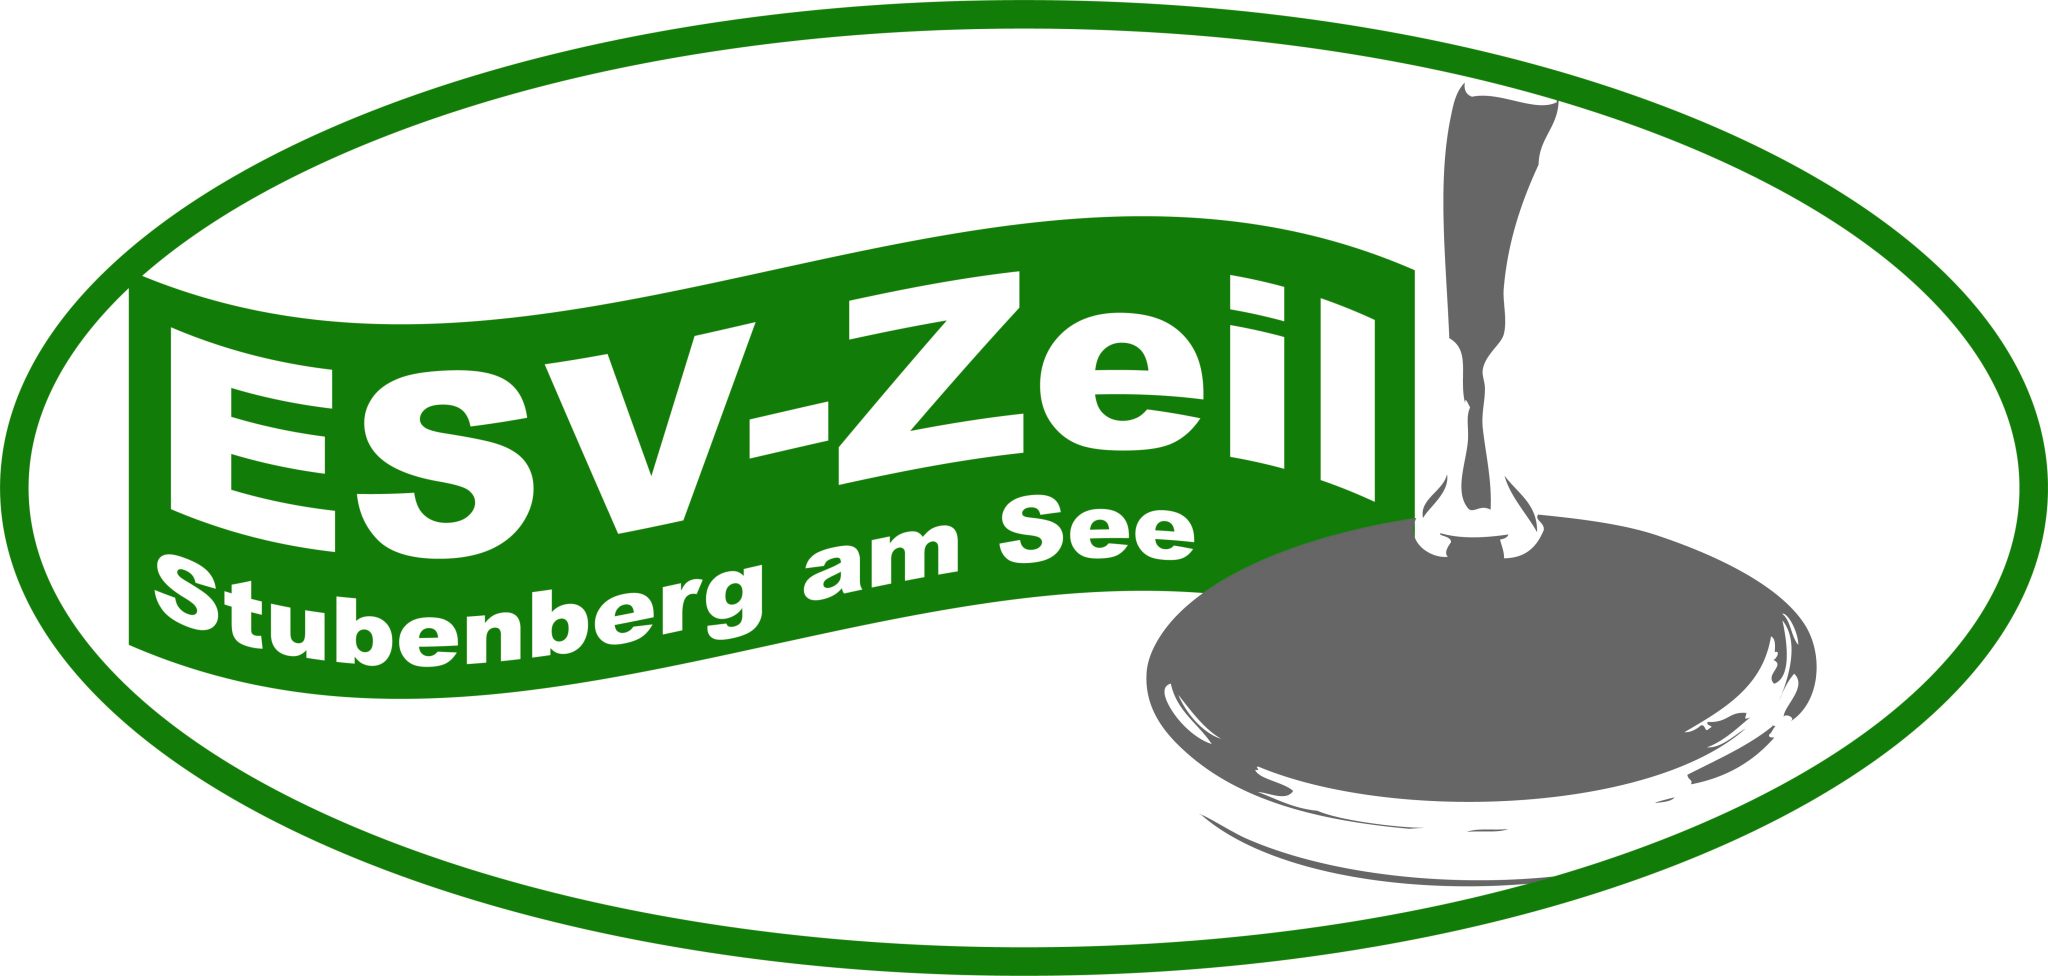 ESV Zeil Stubenberg 1